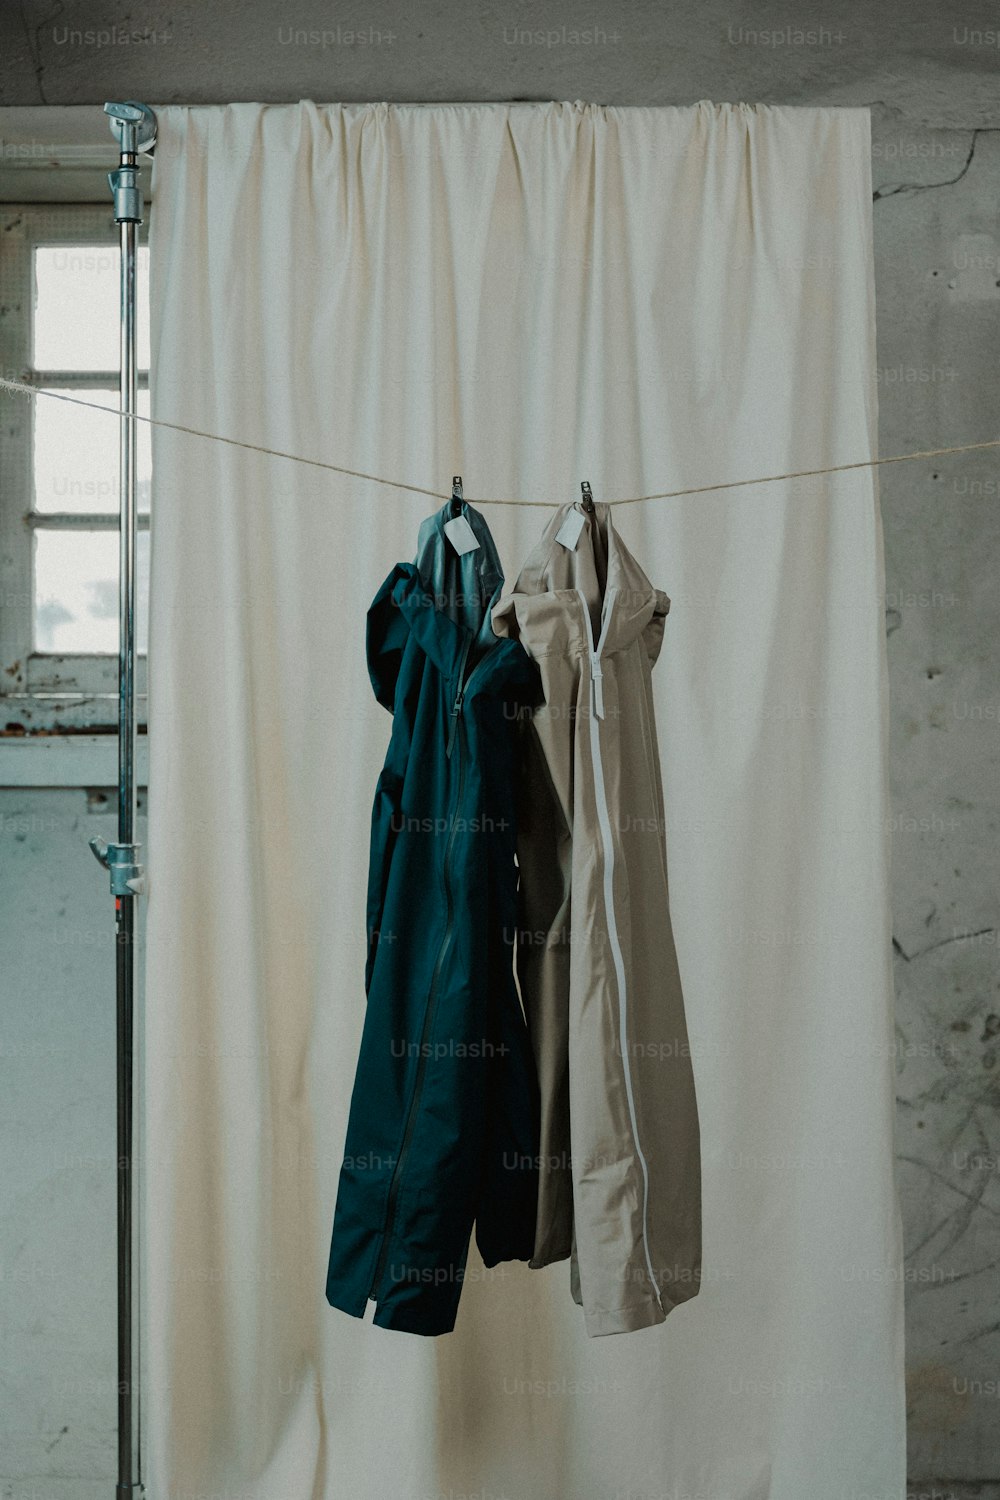 ropa colgada en un tendedero frente a una cortina